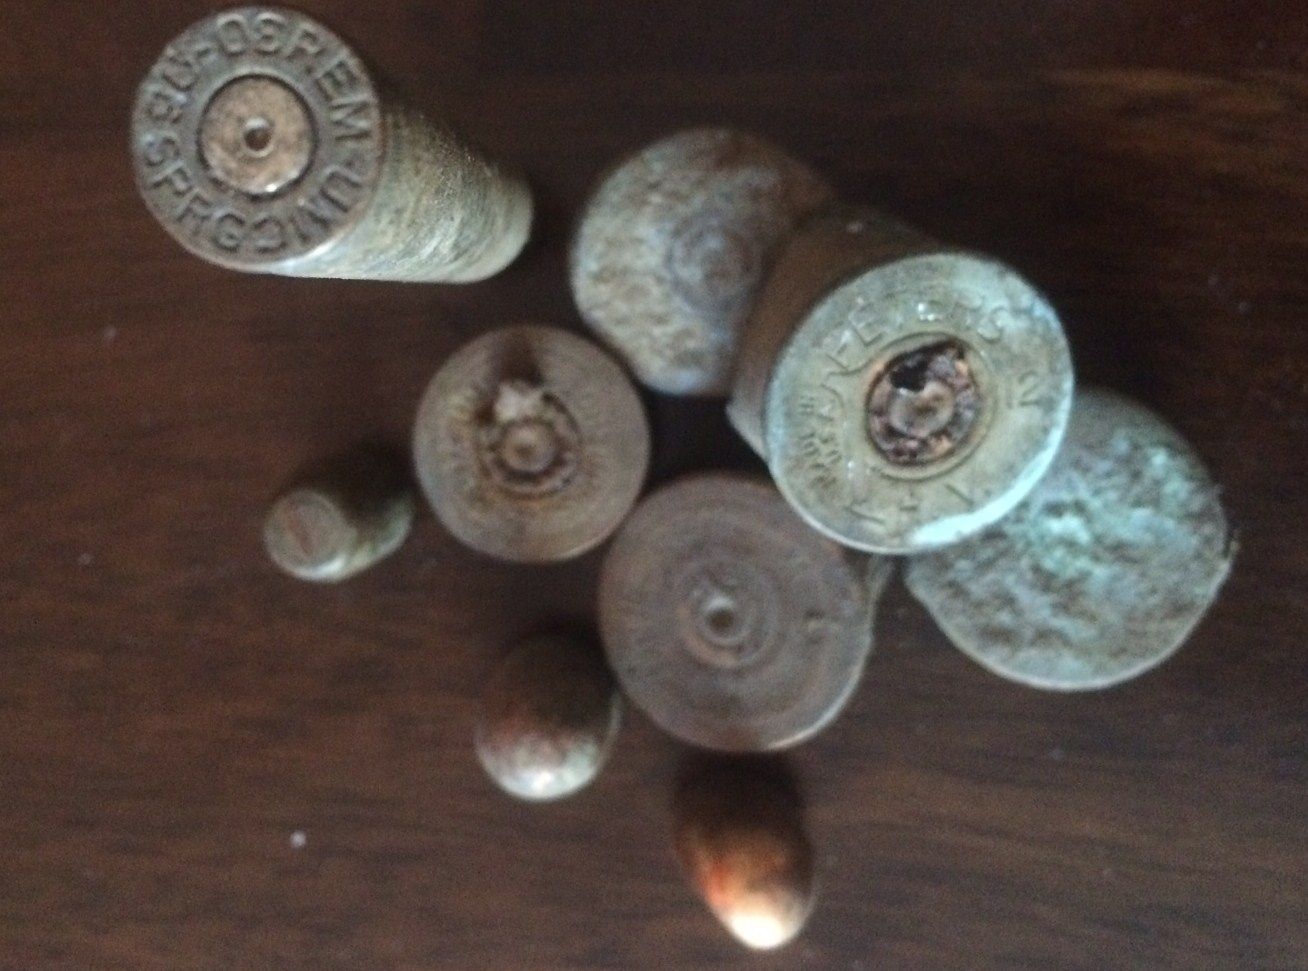 random shells, bullets